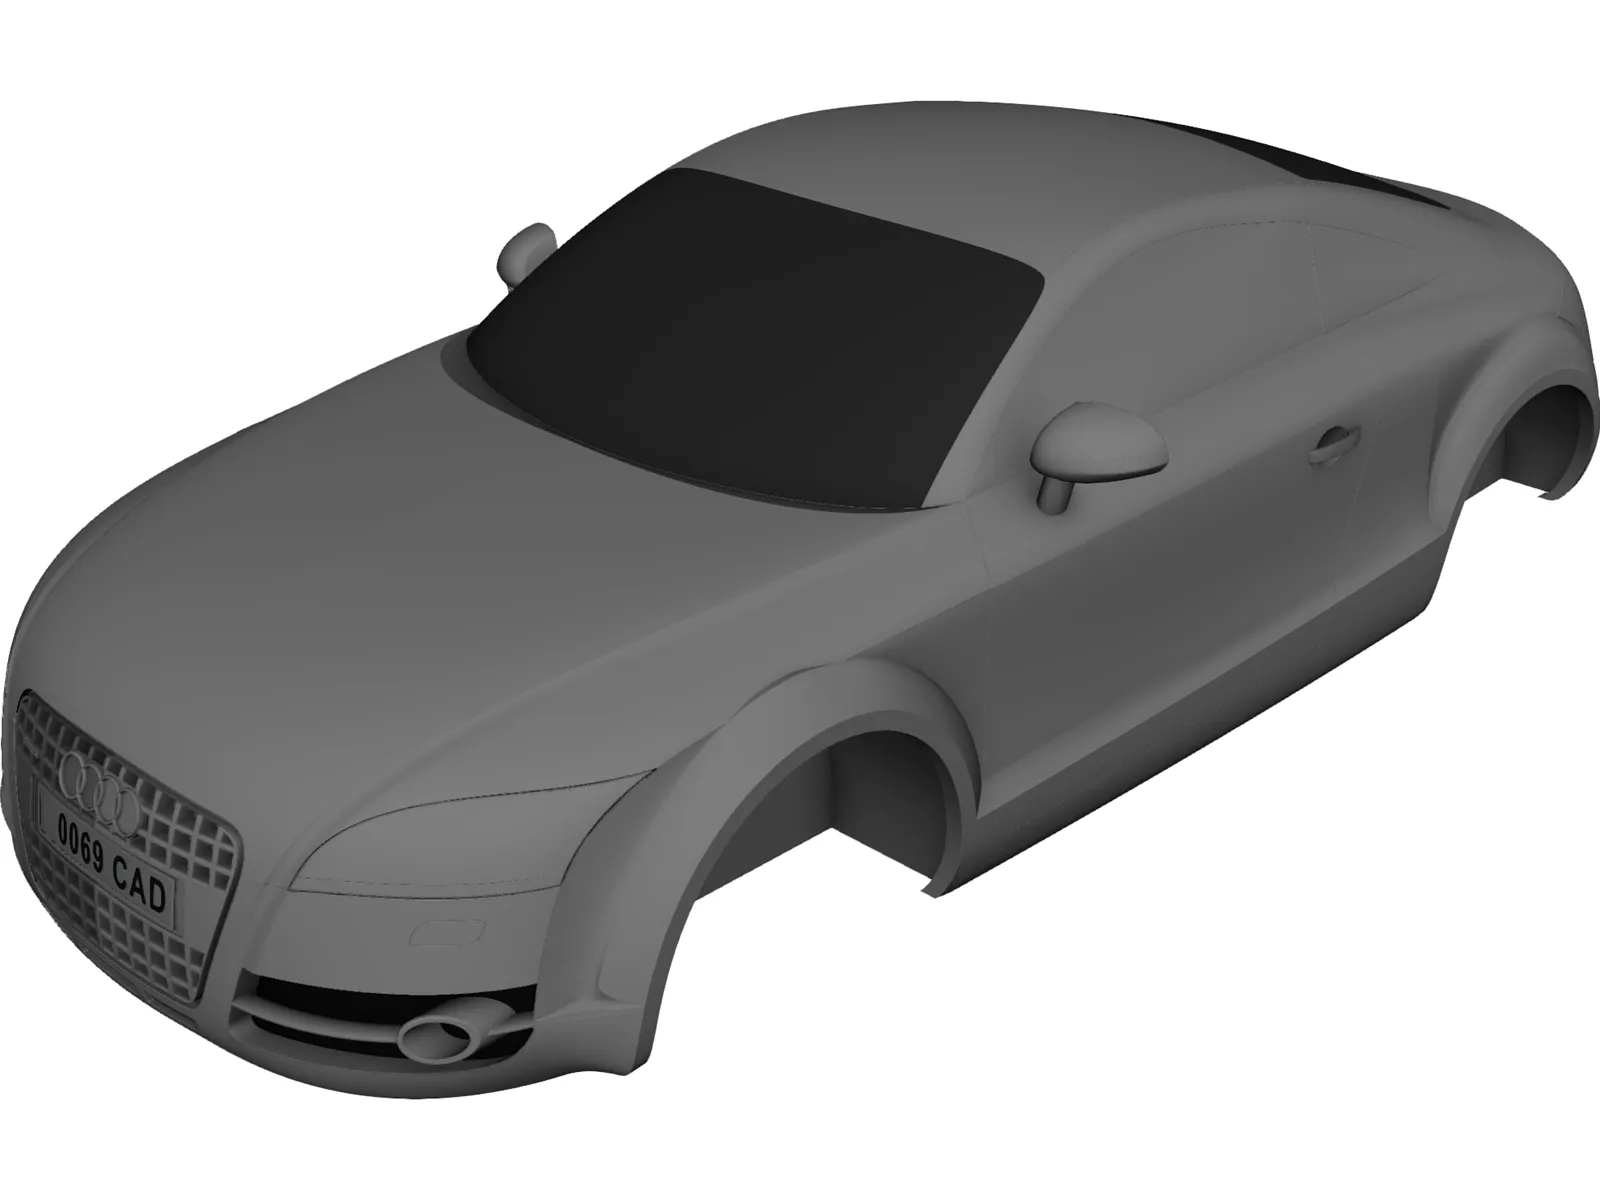 Audi TT Body 3D Model